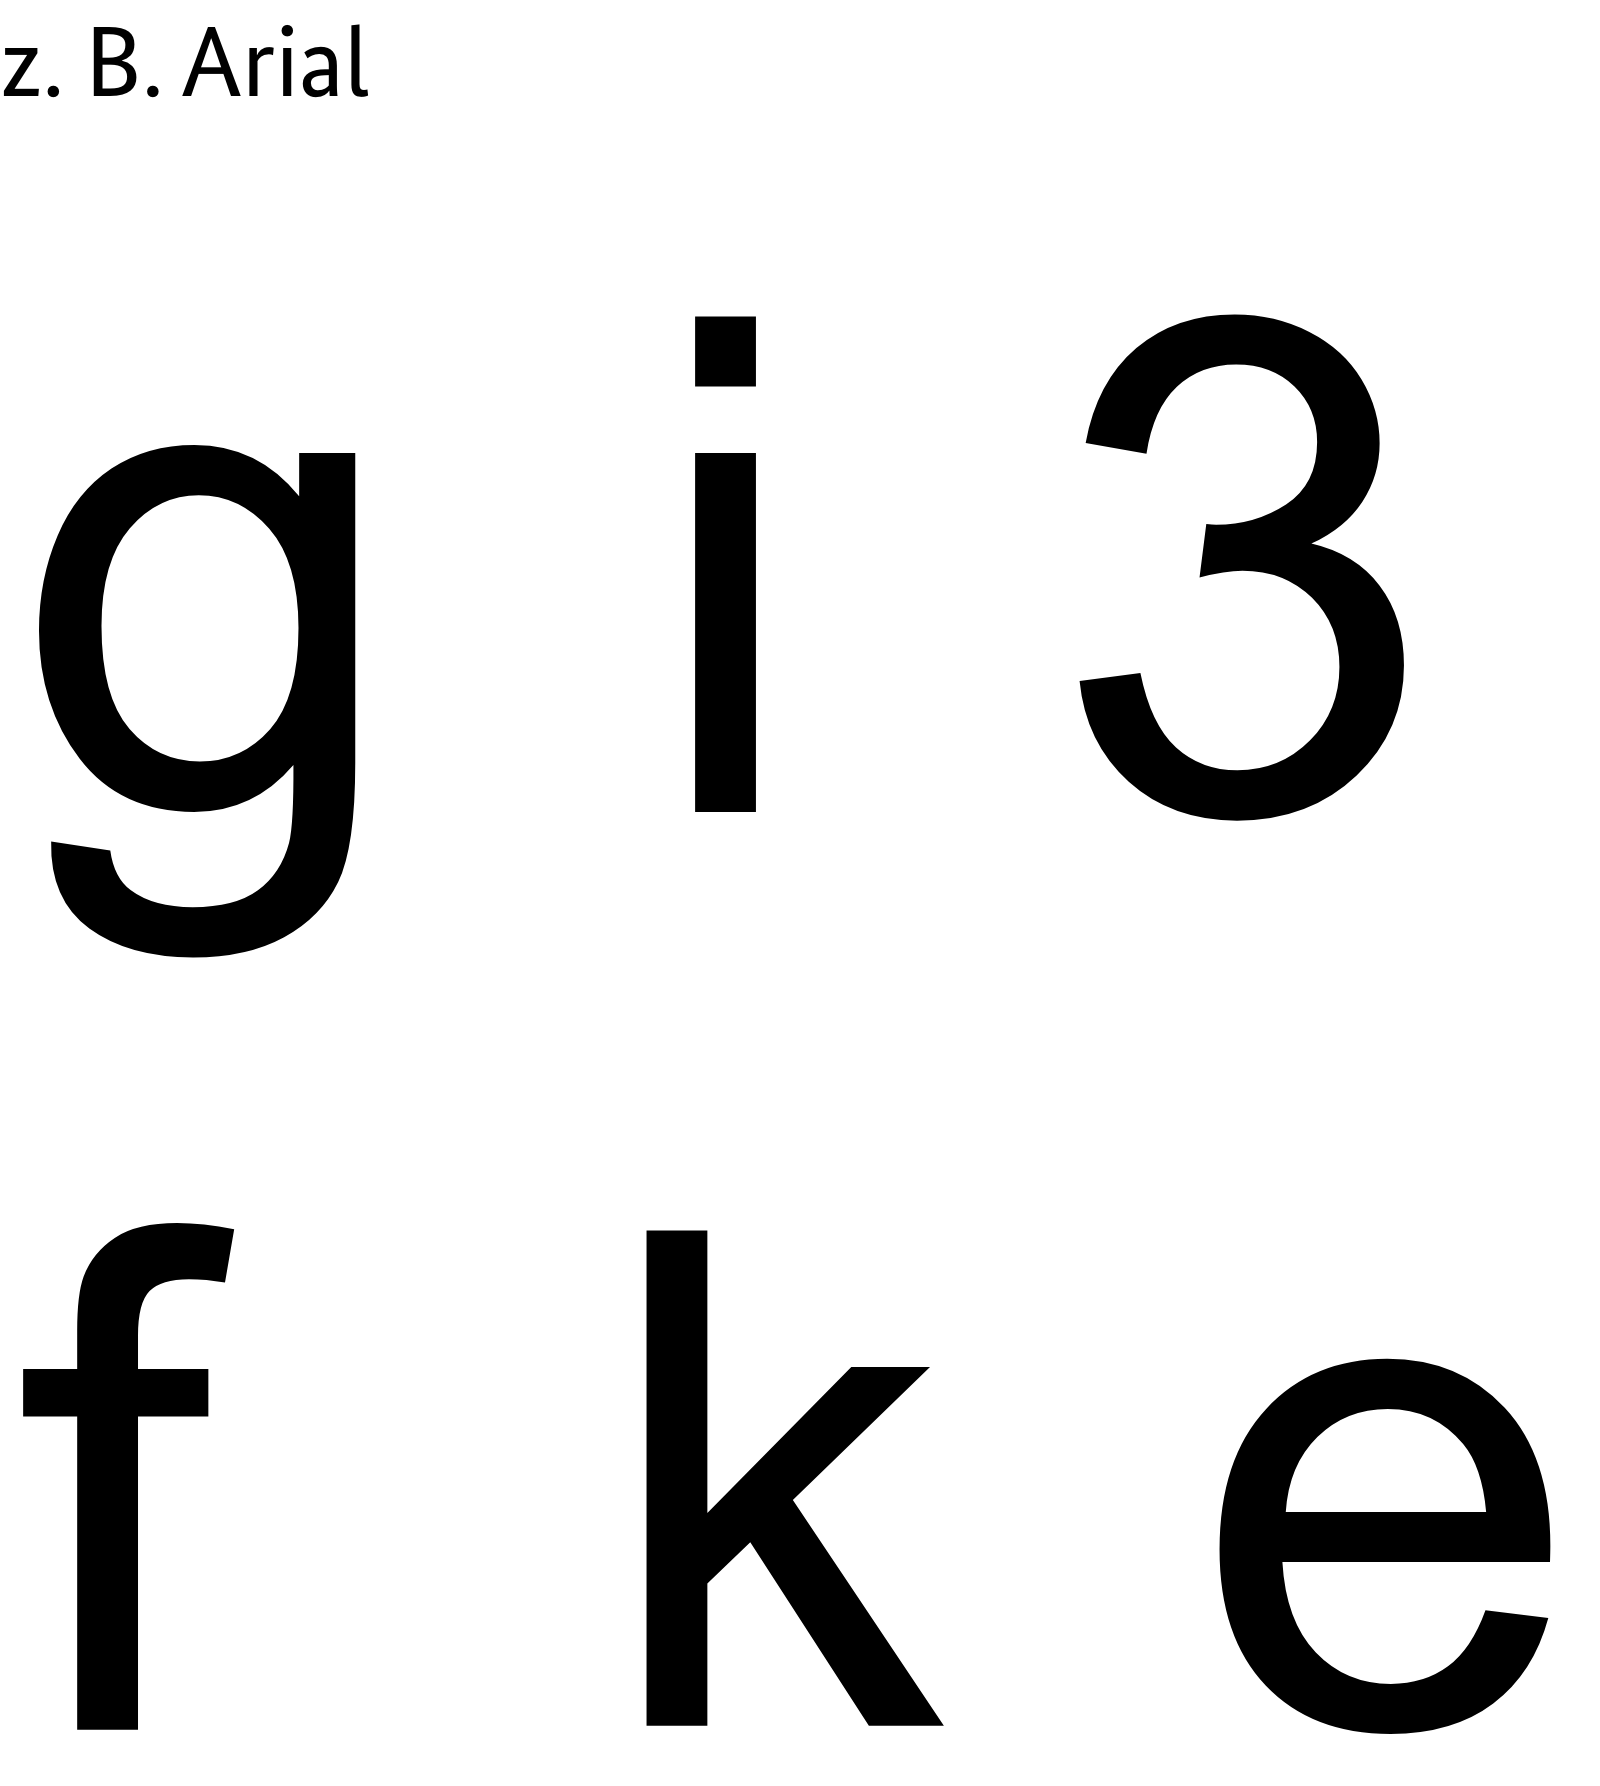 Beispielhafte Buchstaben der Schrift Arial: g, i, 3, f,k, e